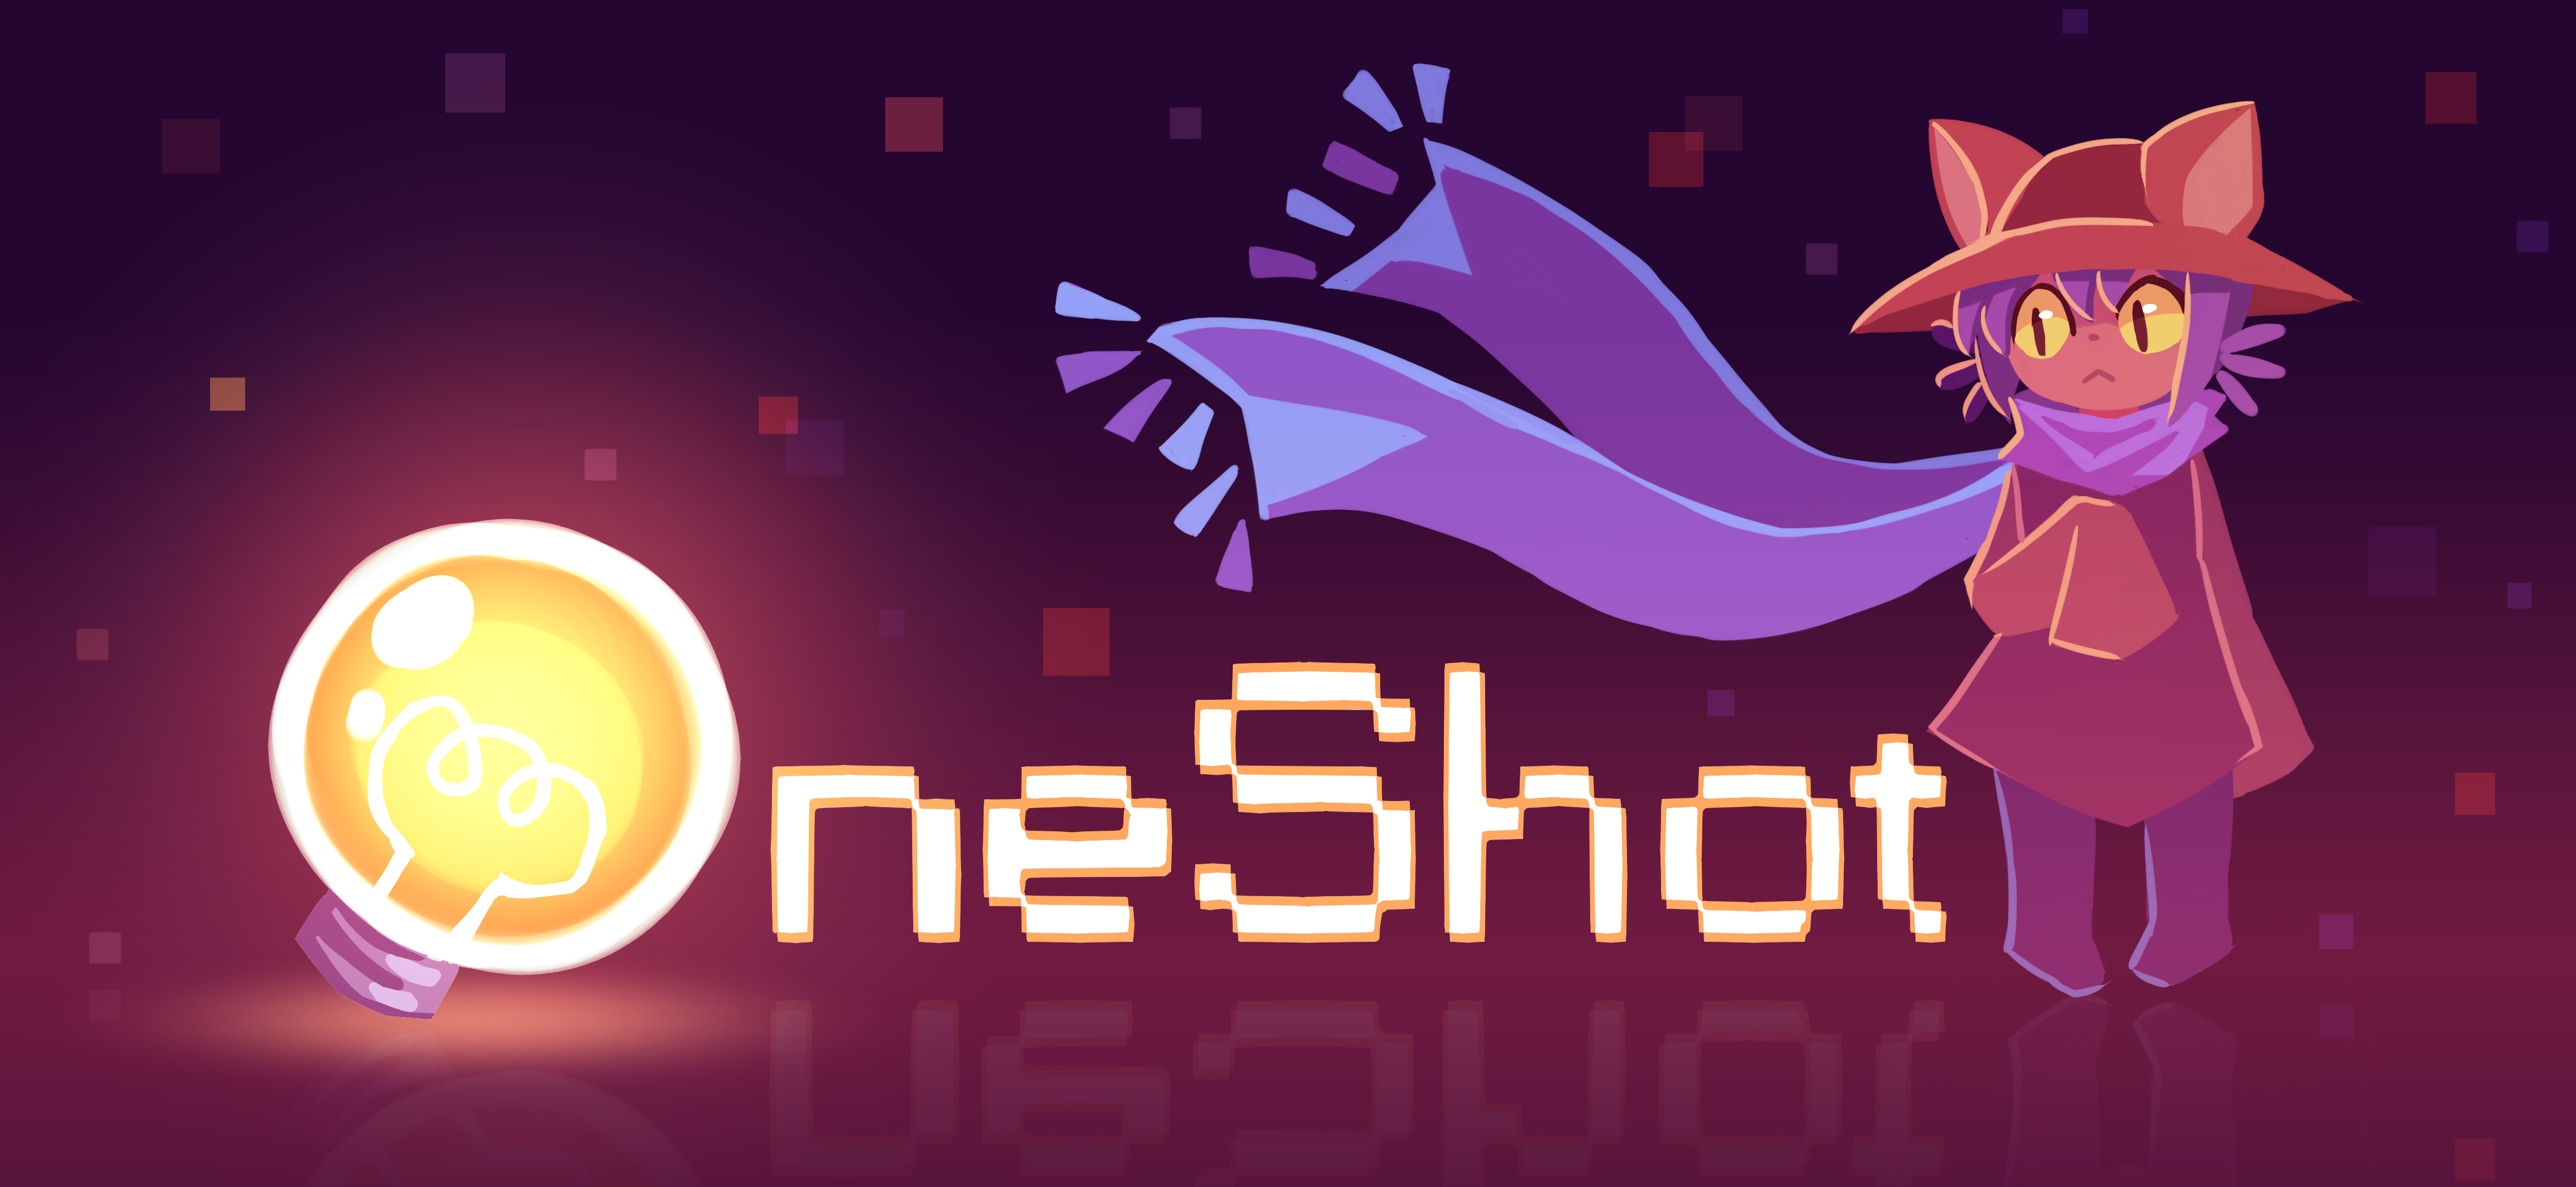 jaquette du jeu vidéo OneShot